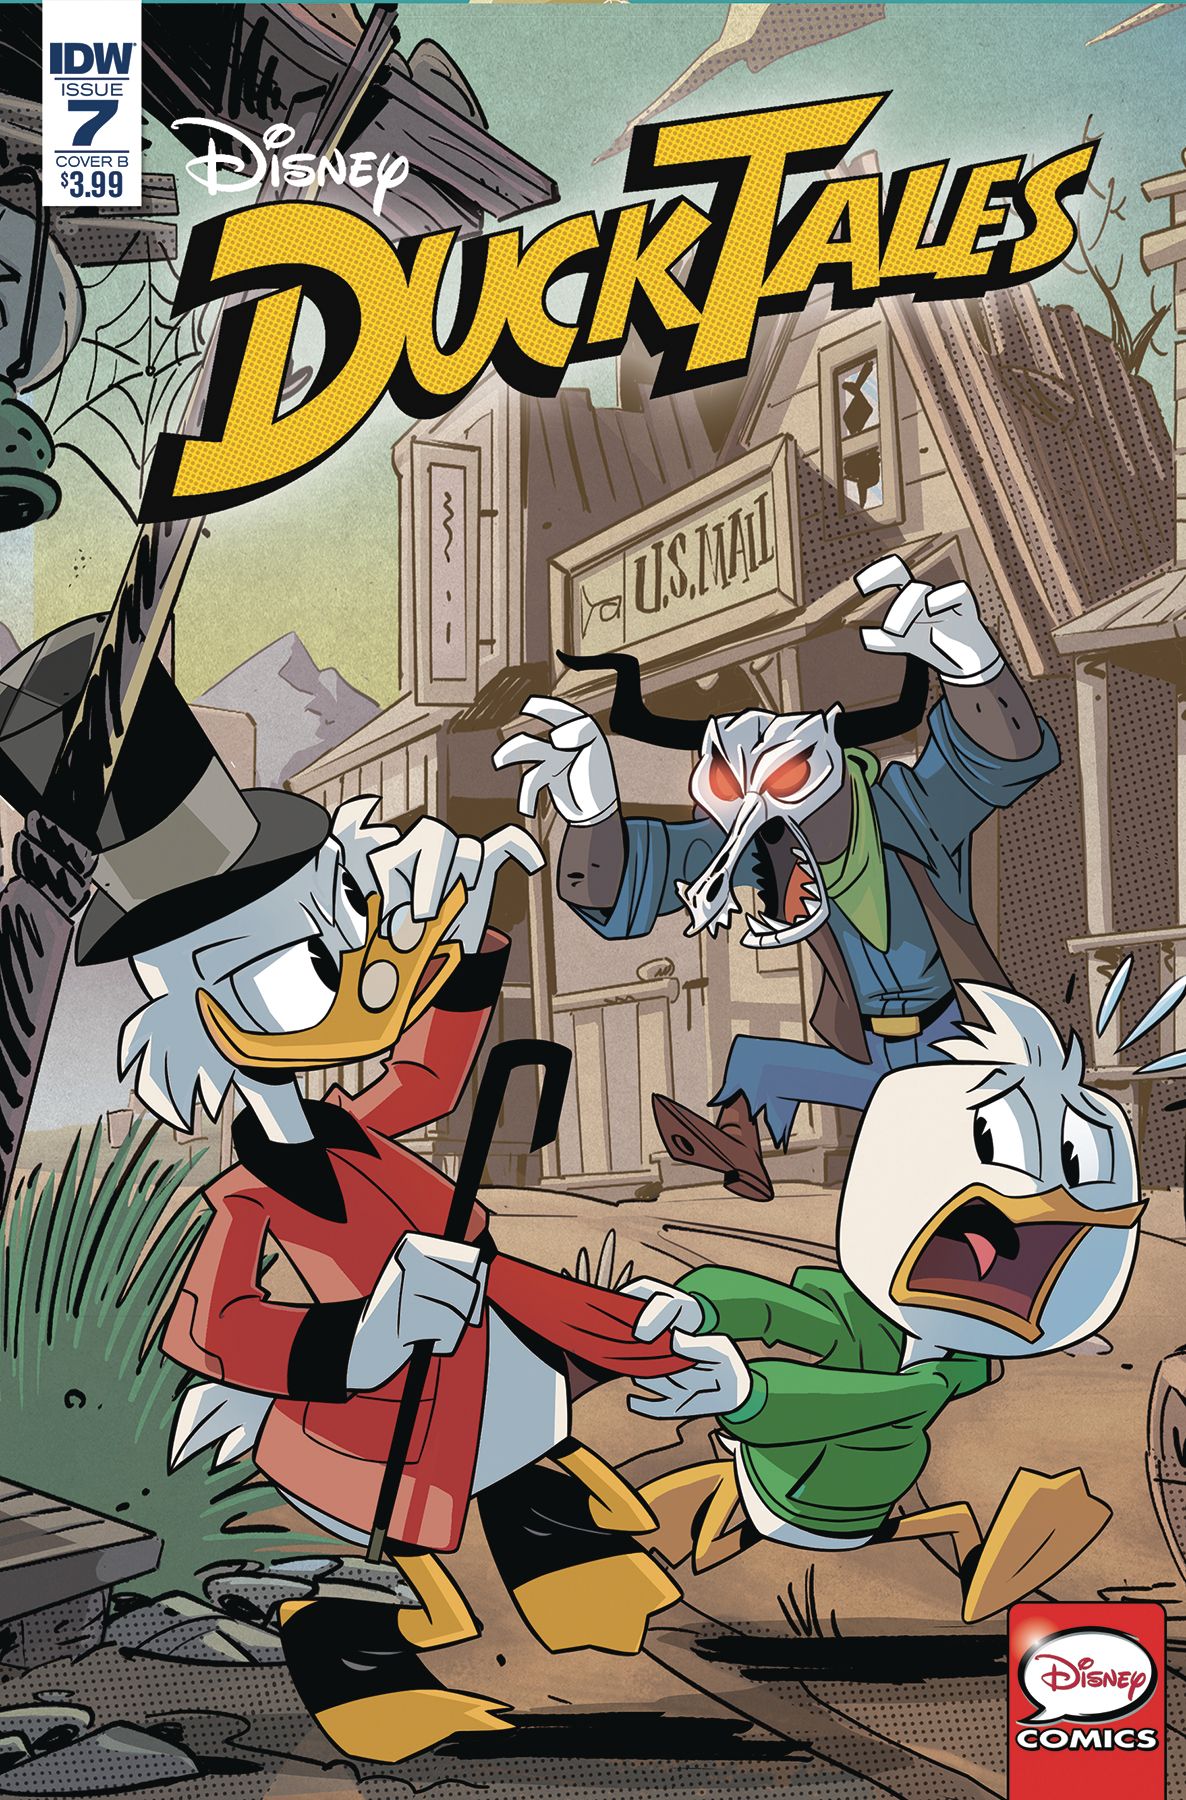 DuckTales #7 Comic